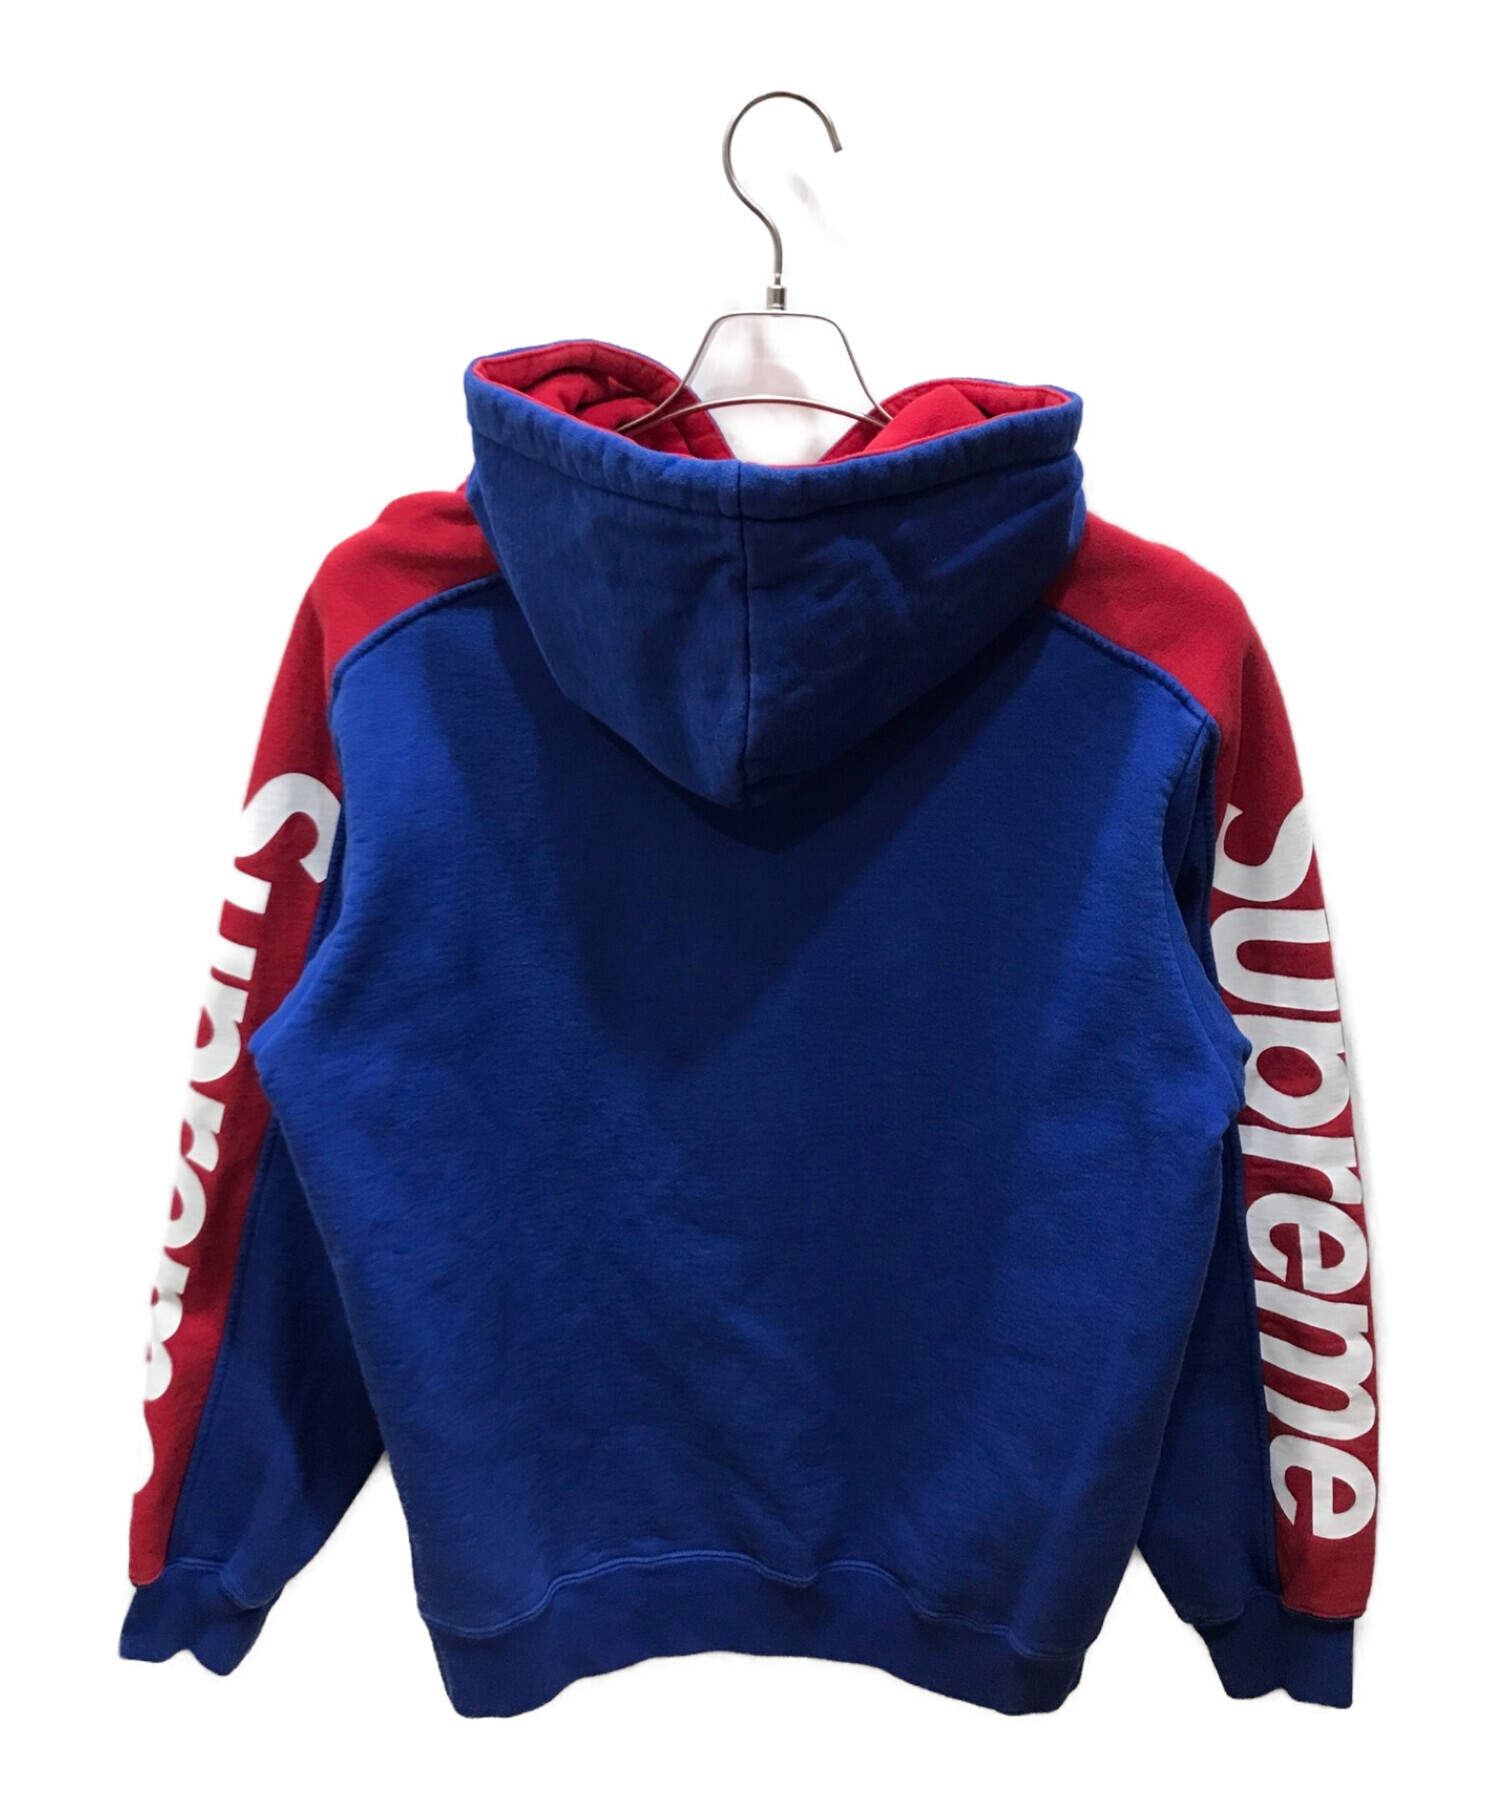 総合1位受賞 Supreme Sideline Hooded Sweatshirt サイズM | www ...